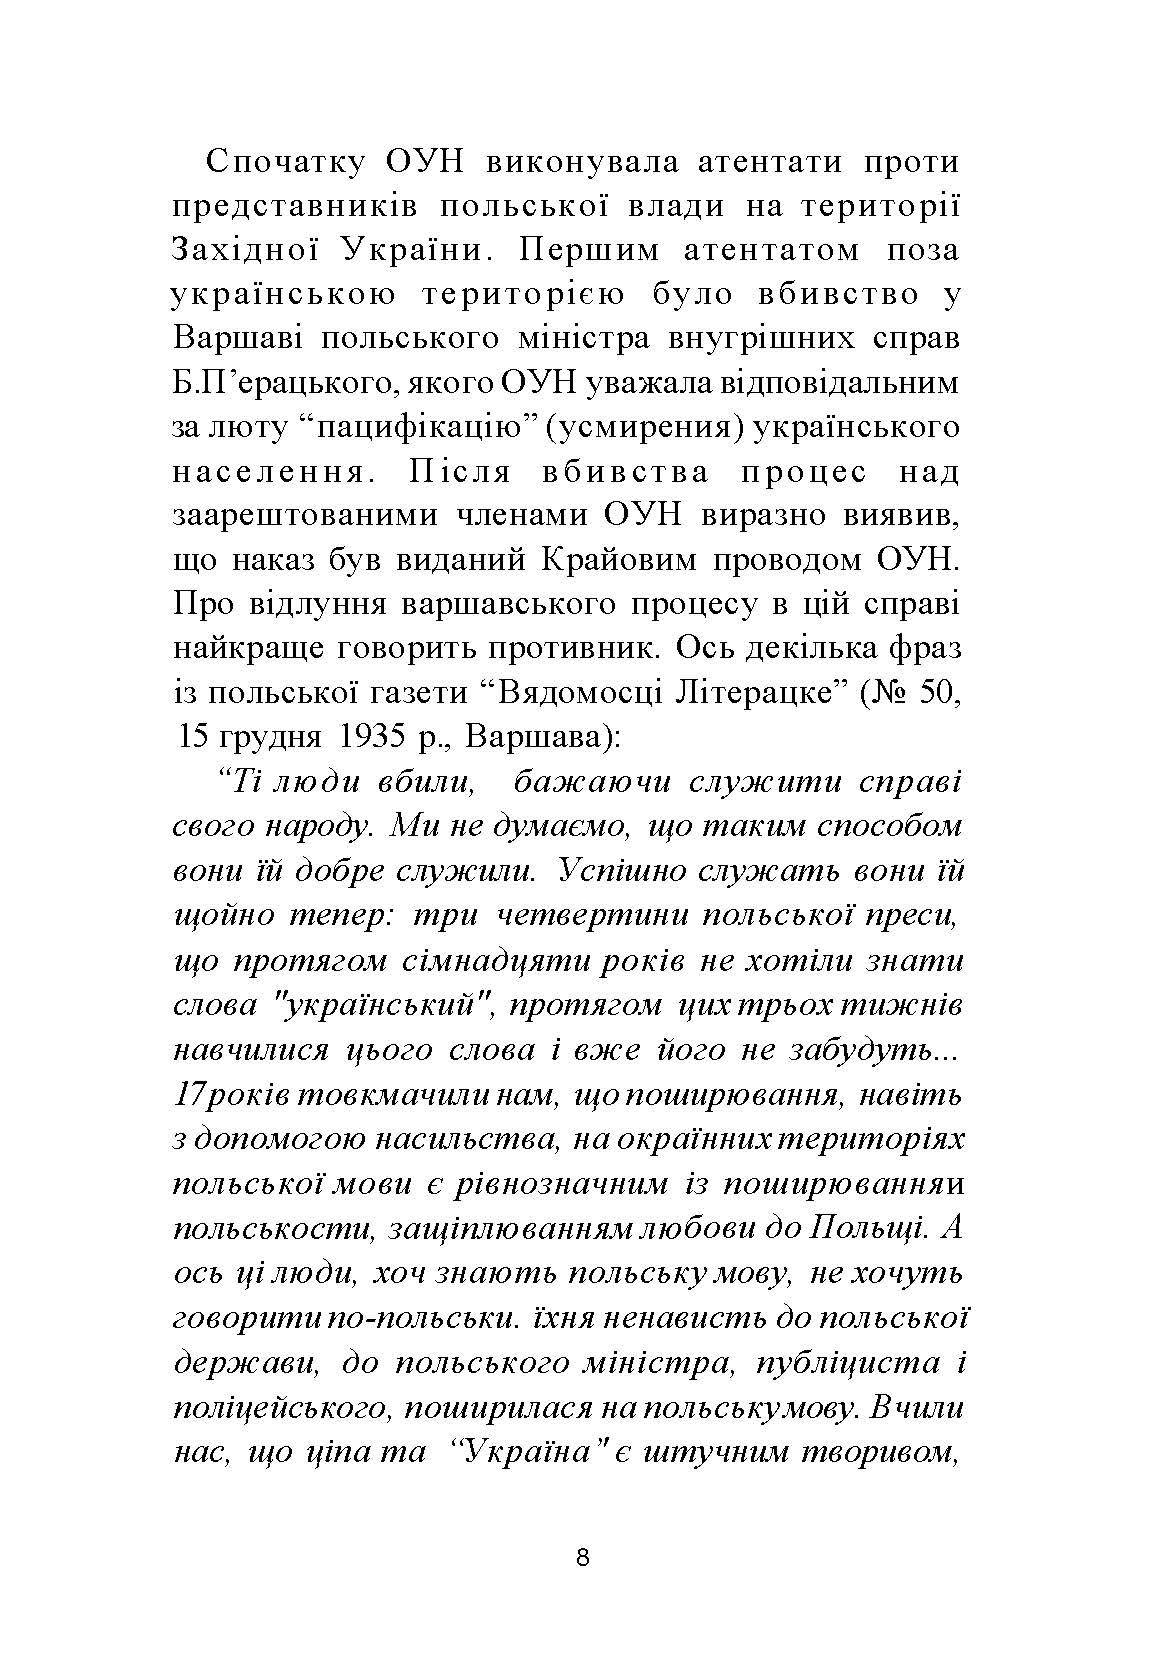 ПРАВДА ІСТОРІЇ: Роки окупації України 1939-1944. Автор — Володимир Косик. 